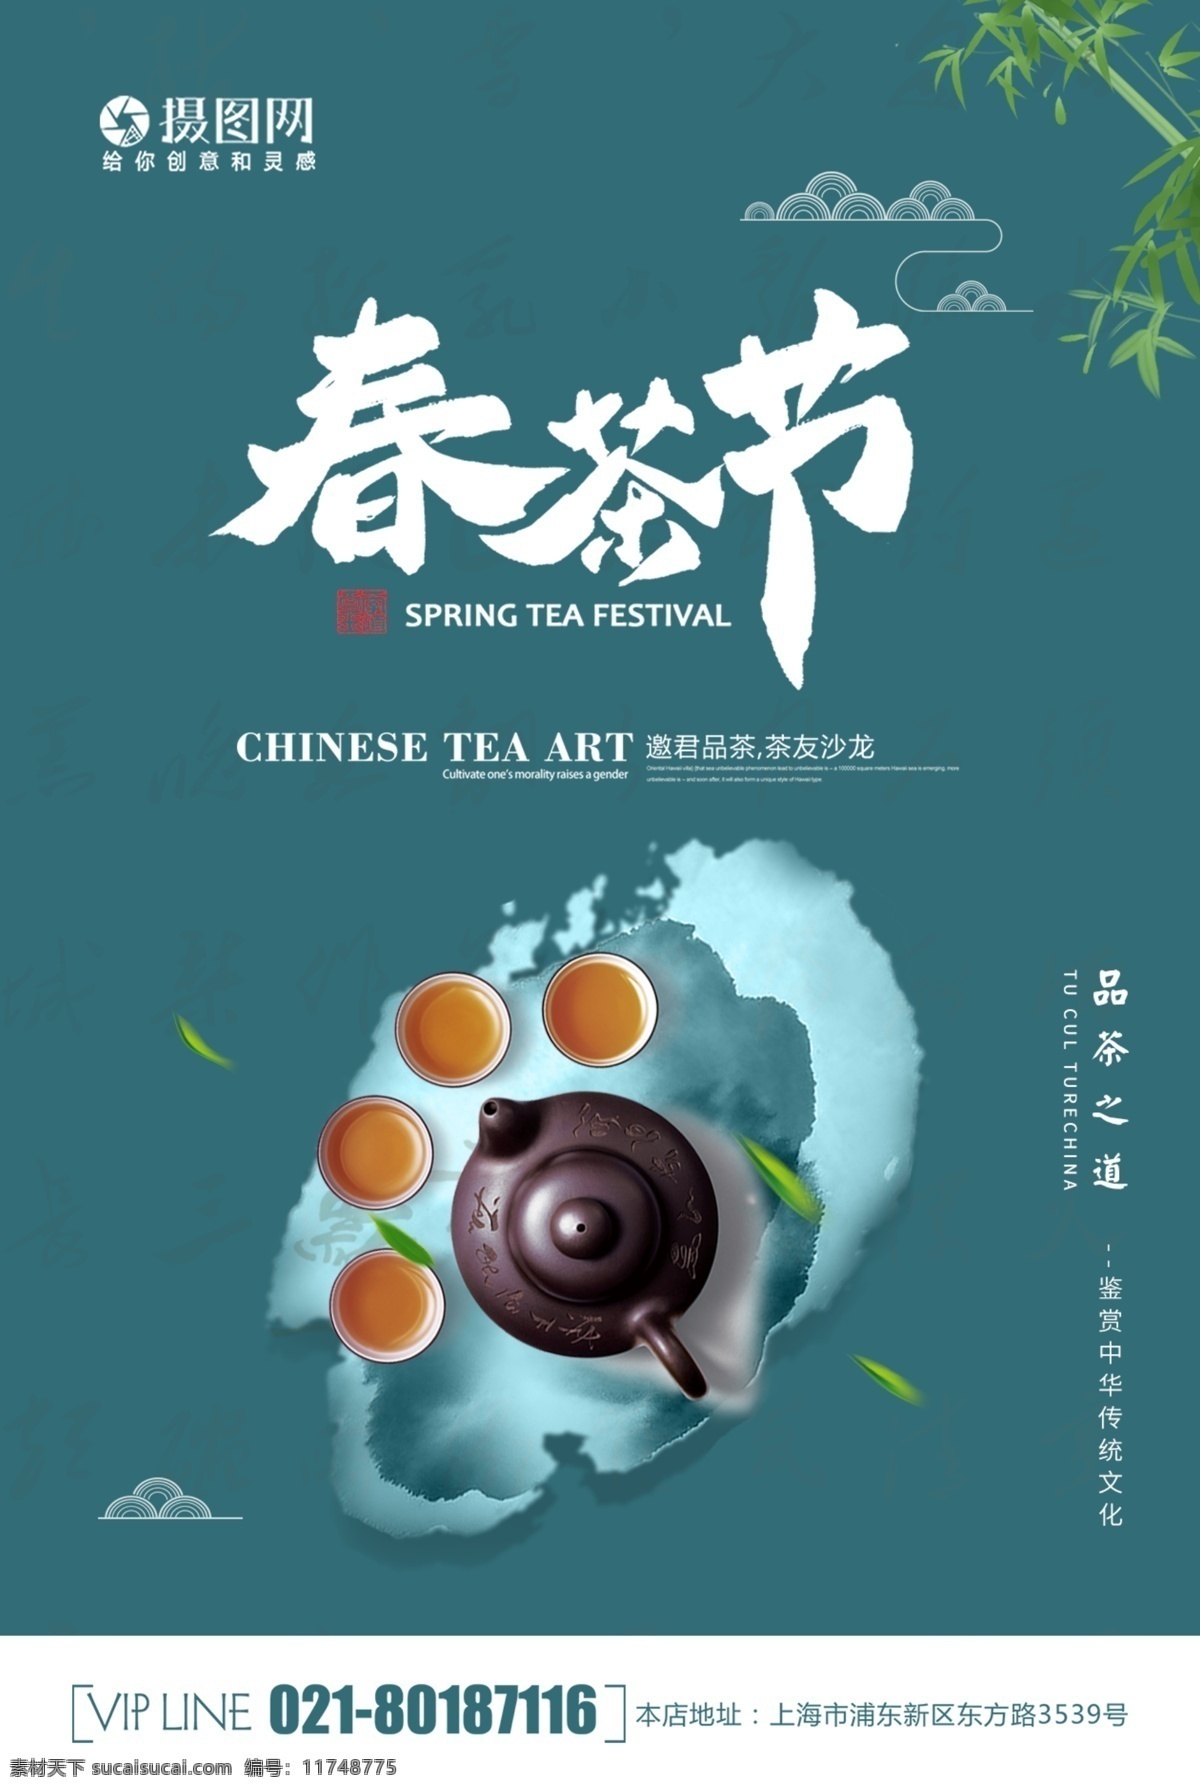 简约 大气 春茶 节 海报 下午茶 休闲时光 茶 茶文化 茶叶 茶道 茶艺 饮品 茶饮